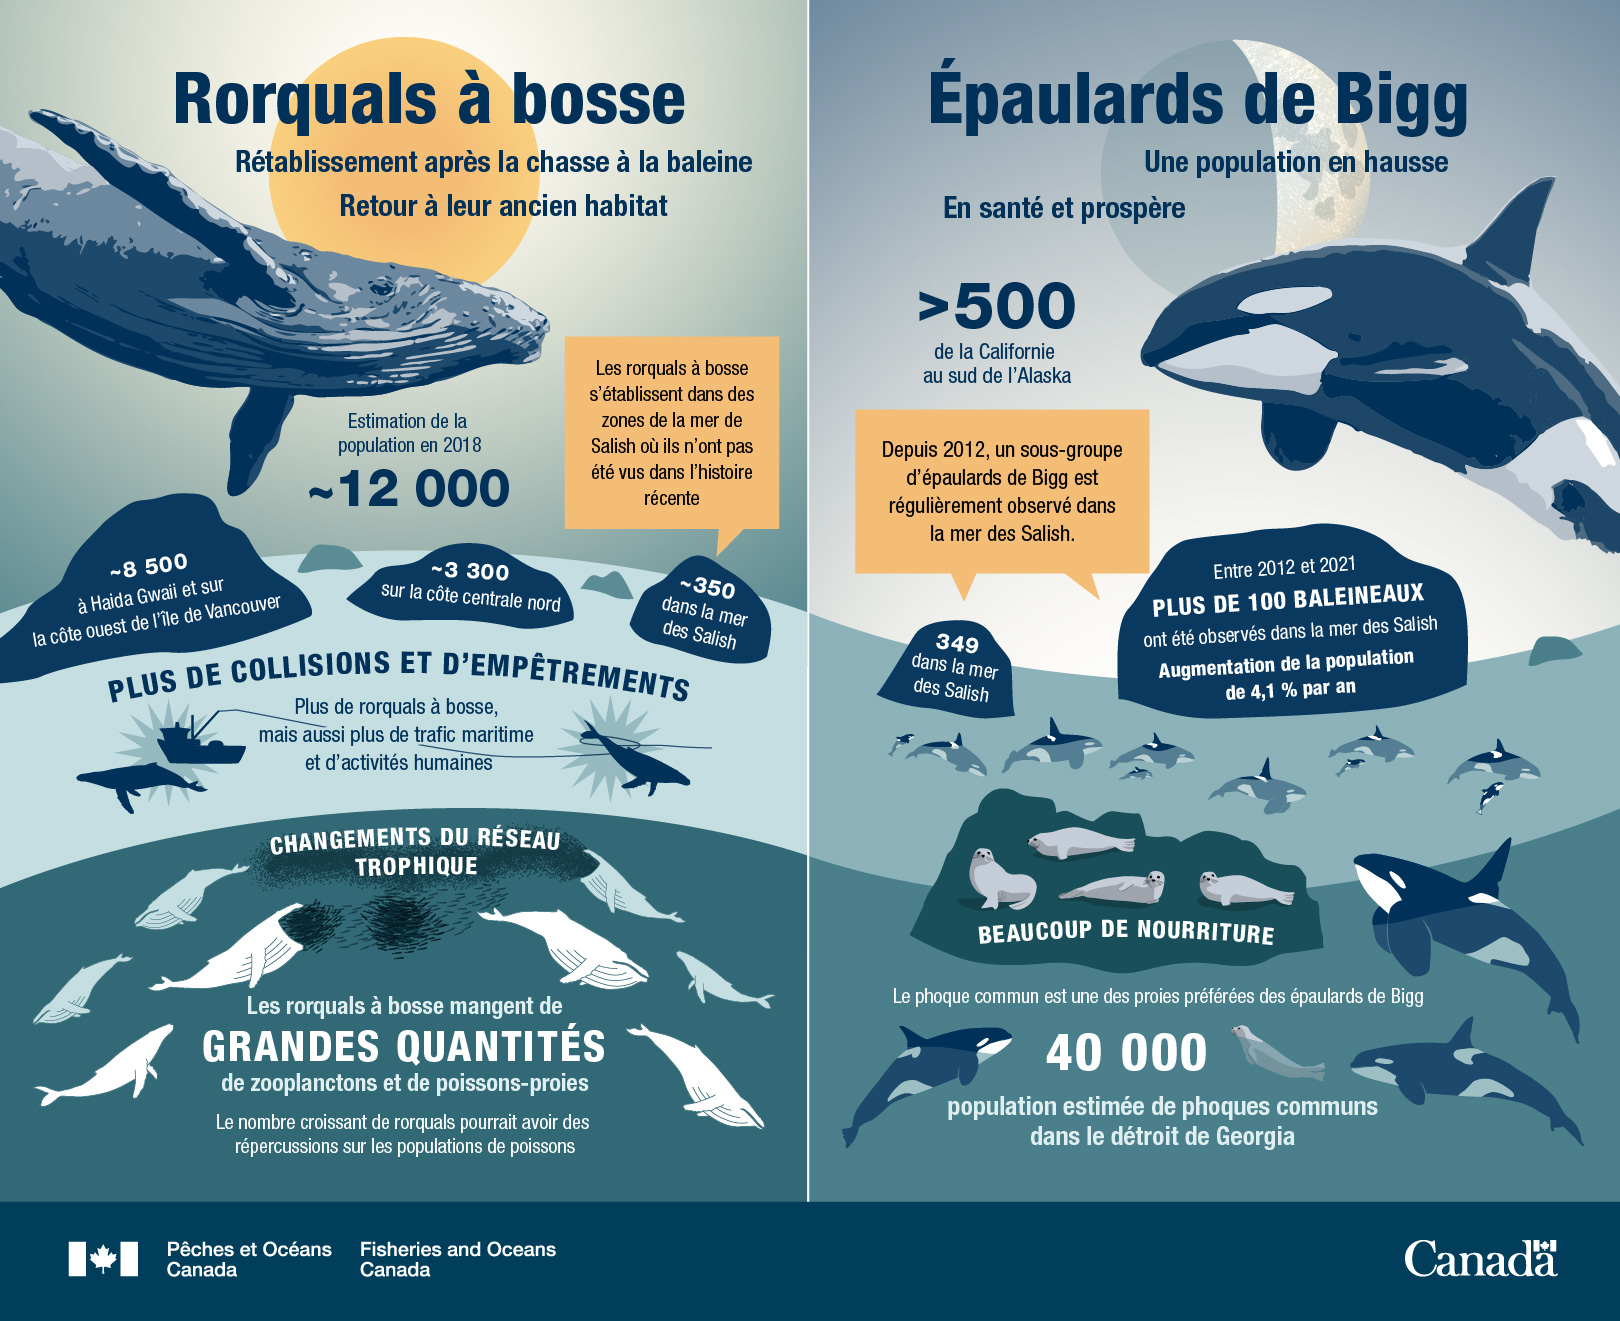 Les baleines à bosse se rétablissent, les épaulards de Bigg sont en augmentation